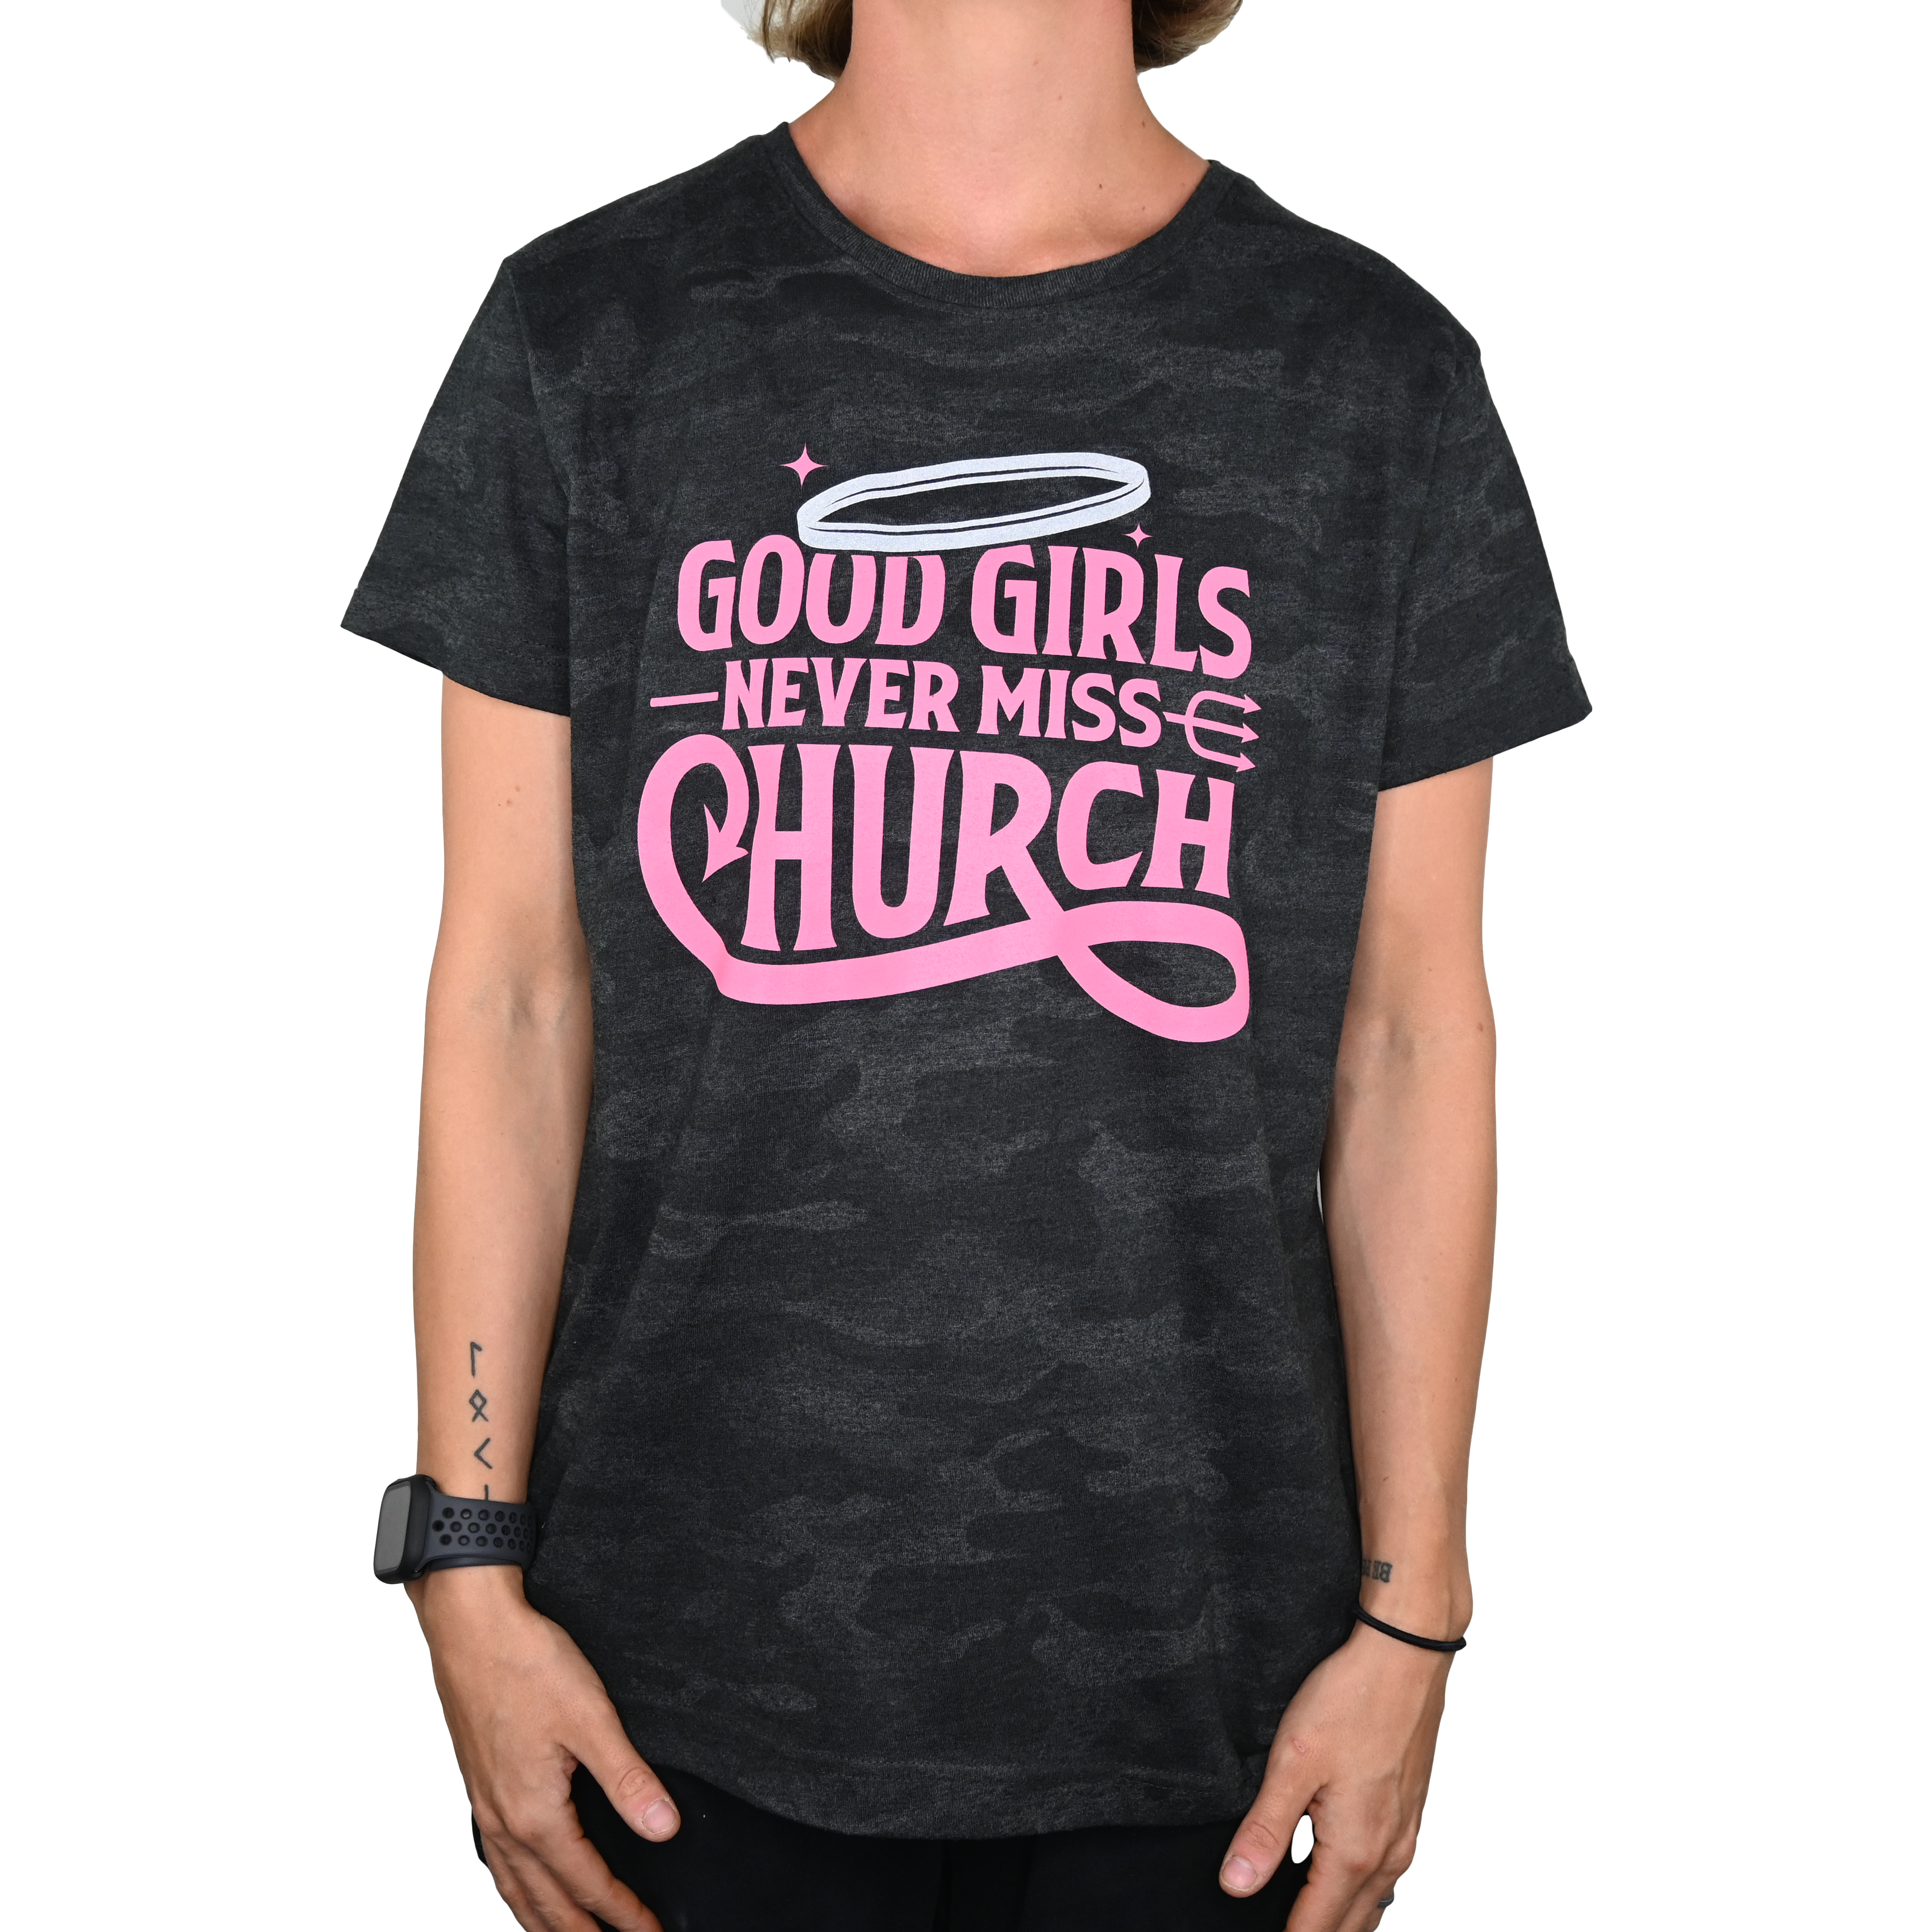 Good Girls Never Miss Church - Black Camo T-Shirt